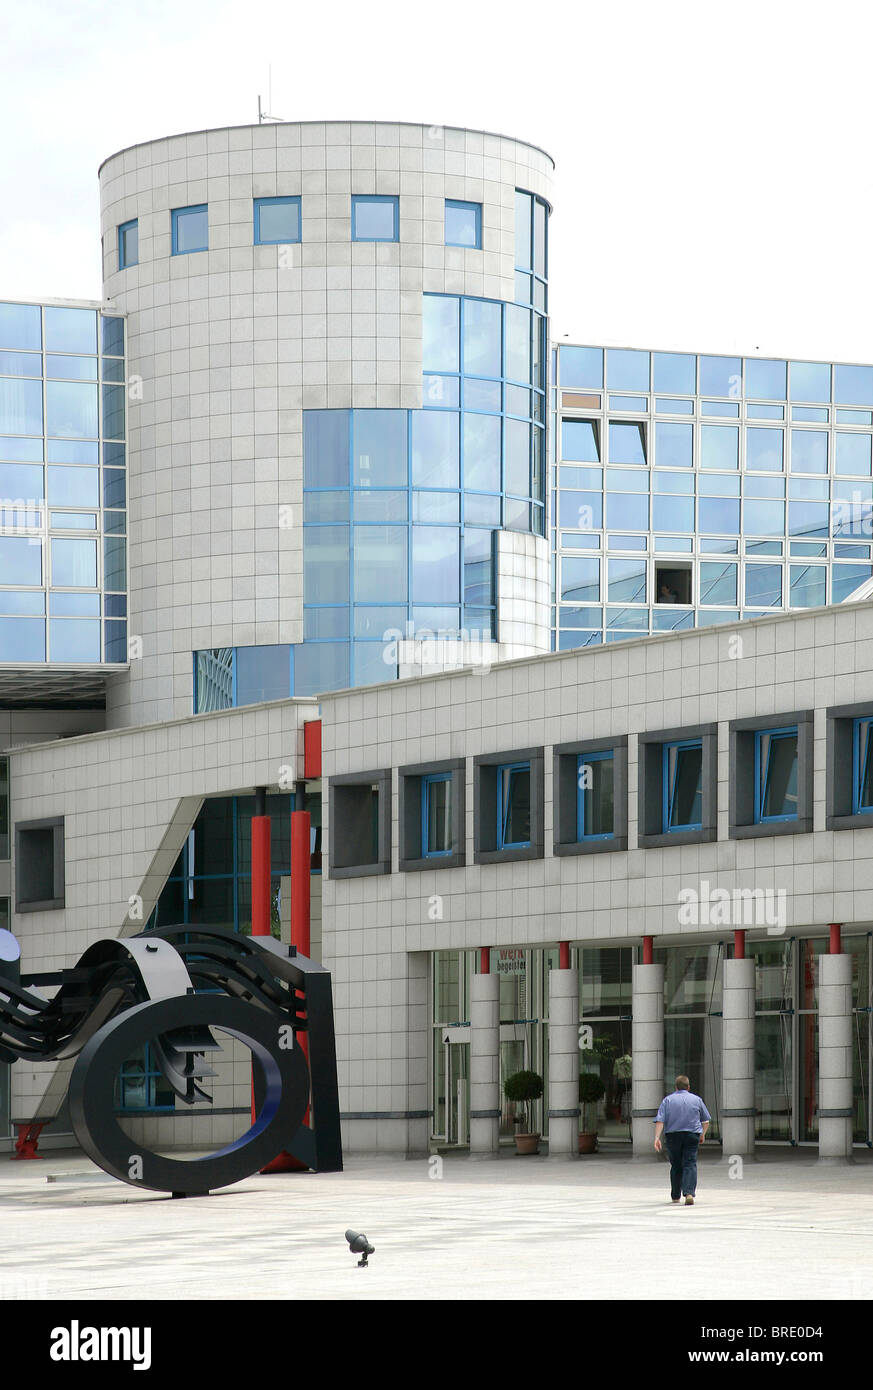 Hauptsitz der Adolf Wuerth GmbH und Co. KG, Businessgroup zur Befestigung von Material, Montagematerial und Werkzeugen in Stockfoto